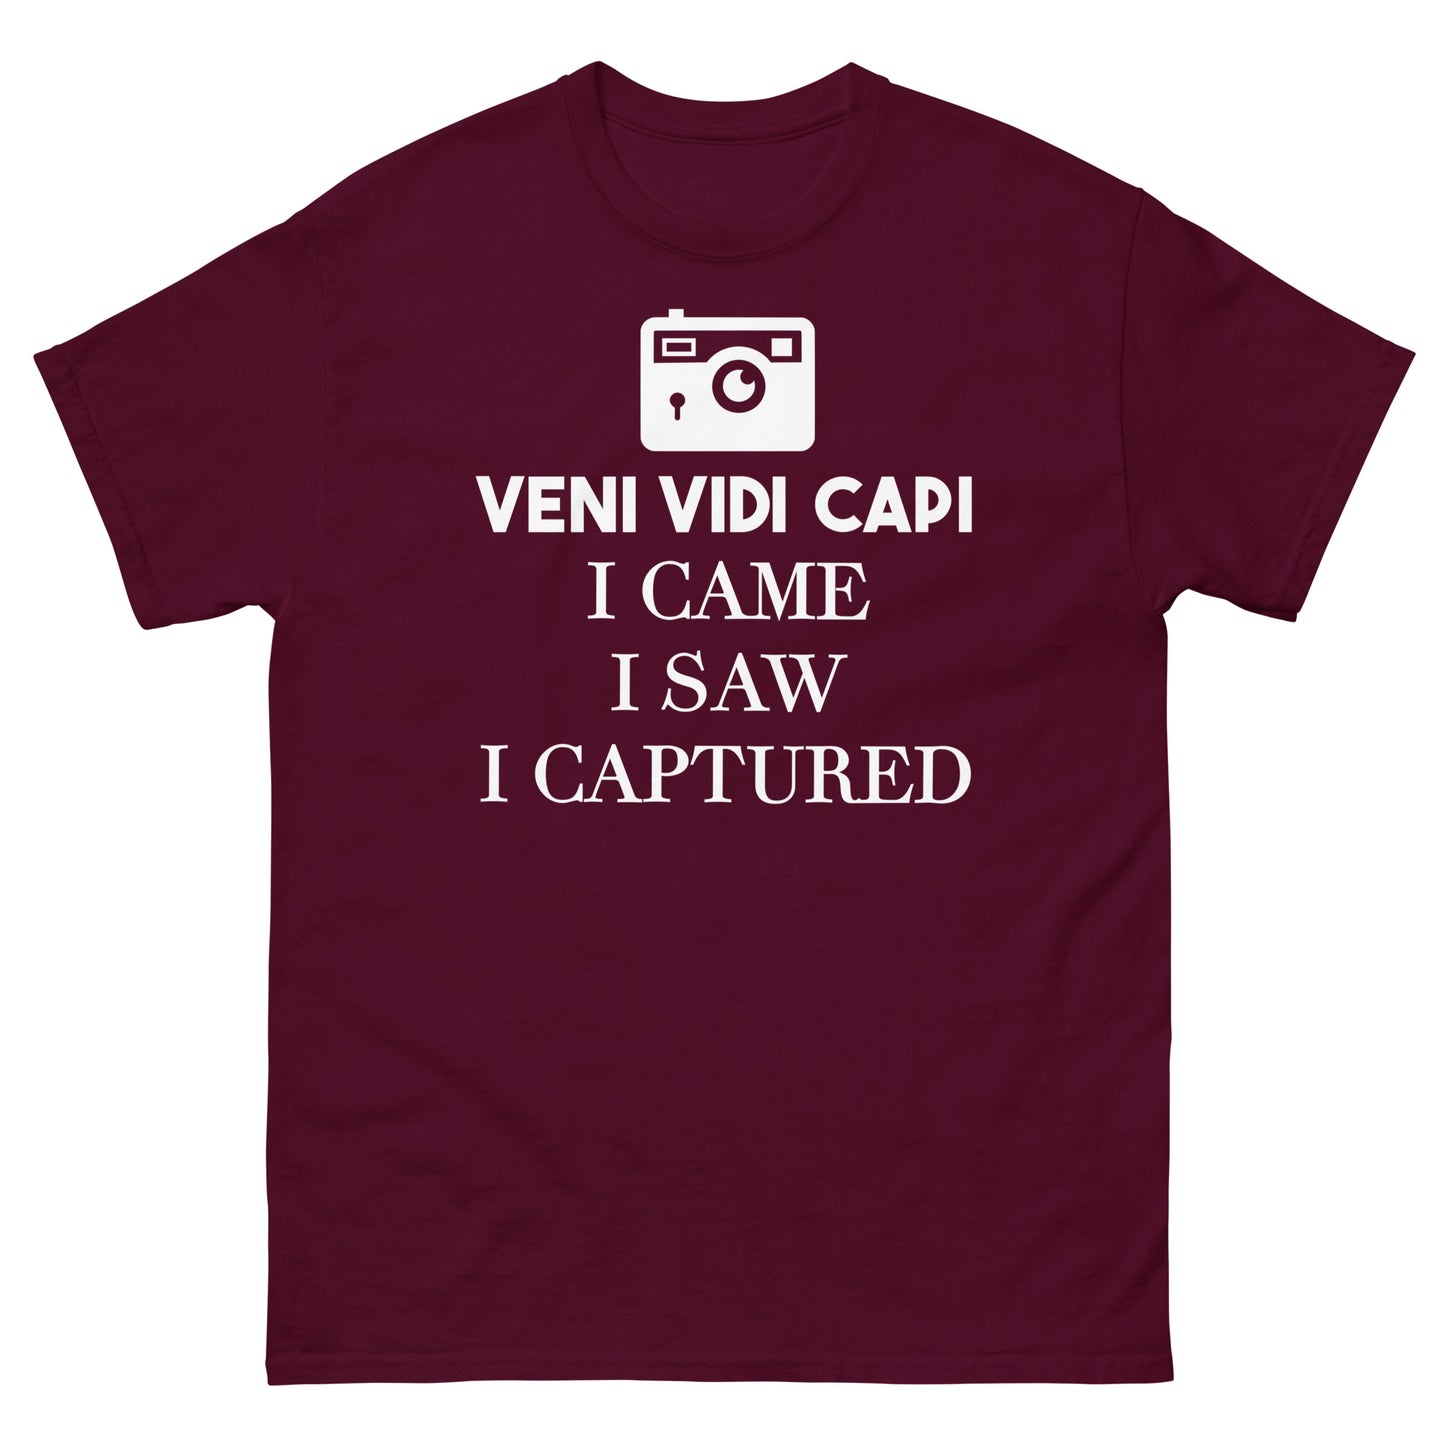 T-shirts Homme - Capi Veni Vidi - Logo Blanc